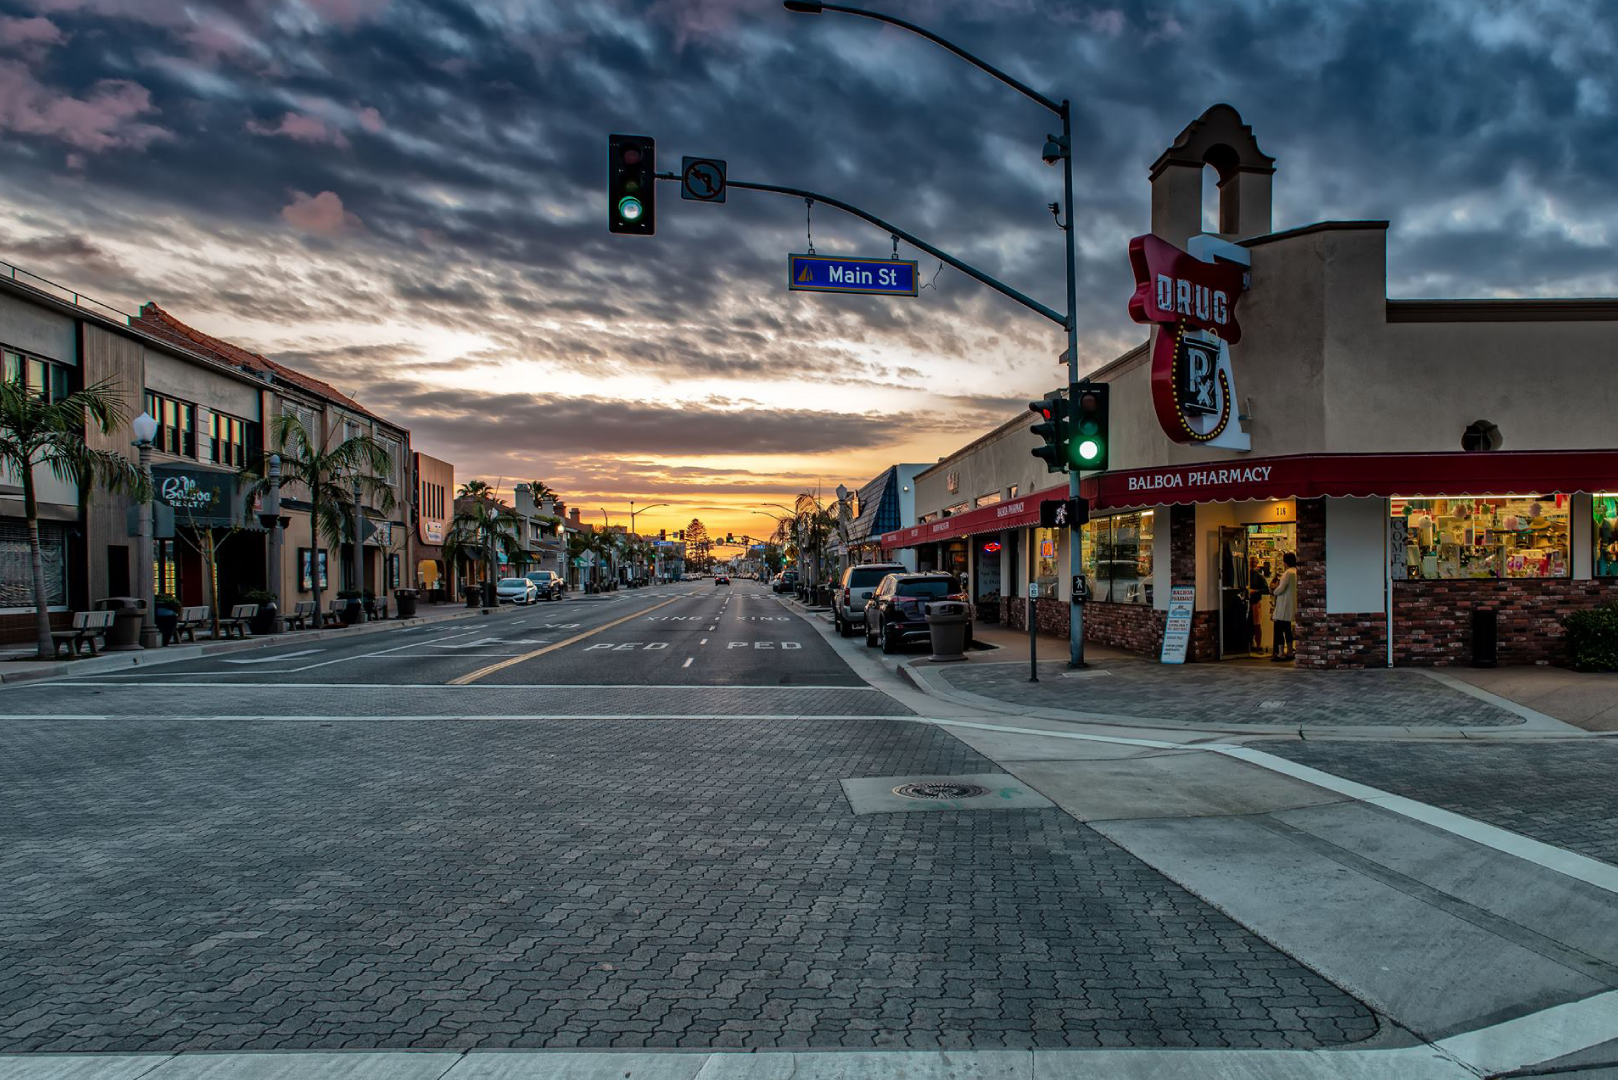 A view of E. Balboa Blvd at Main St.